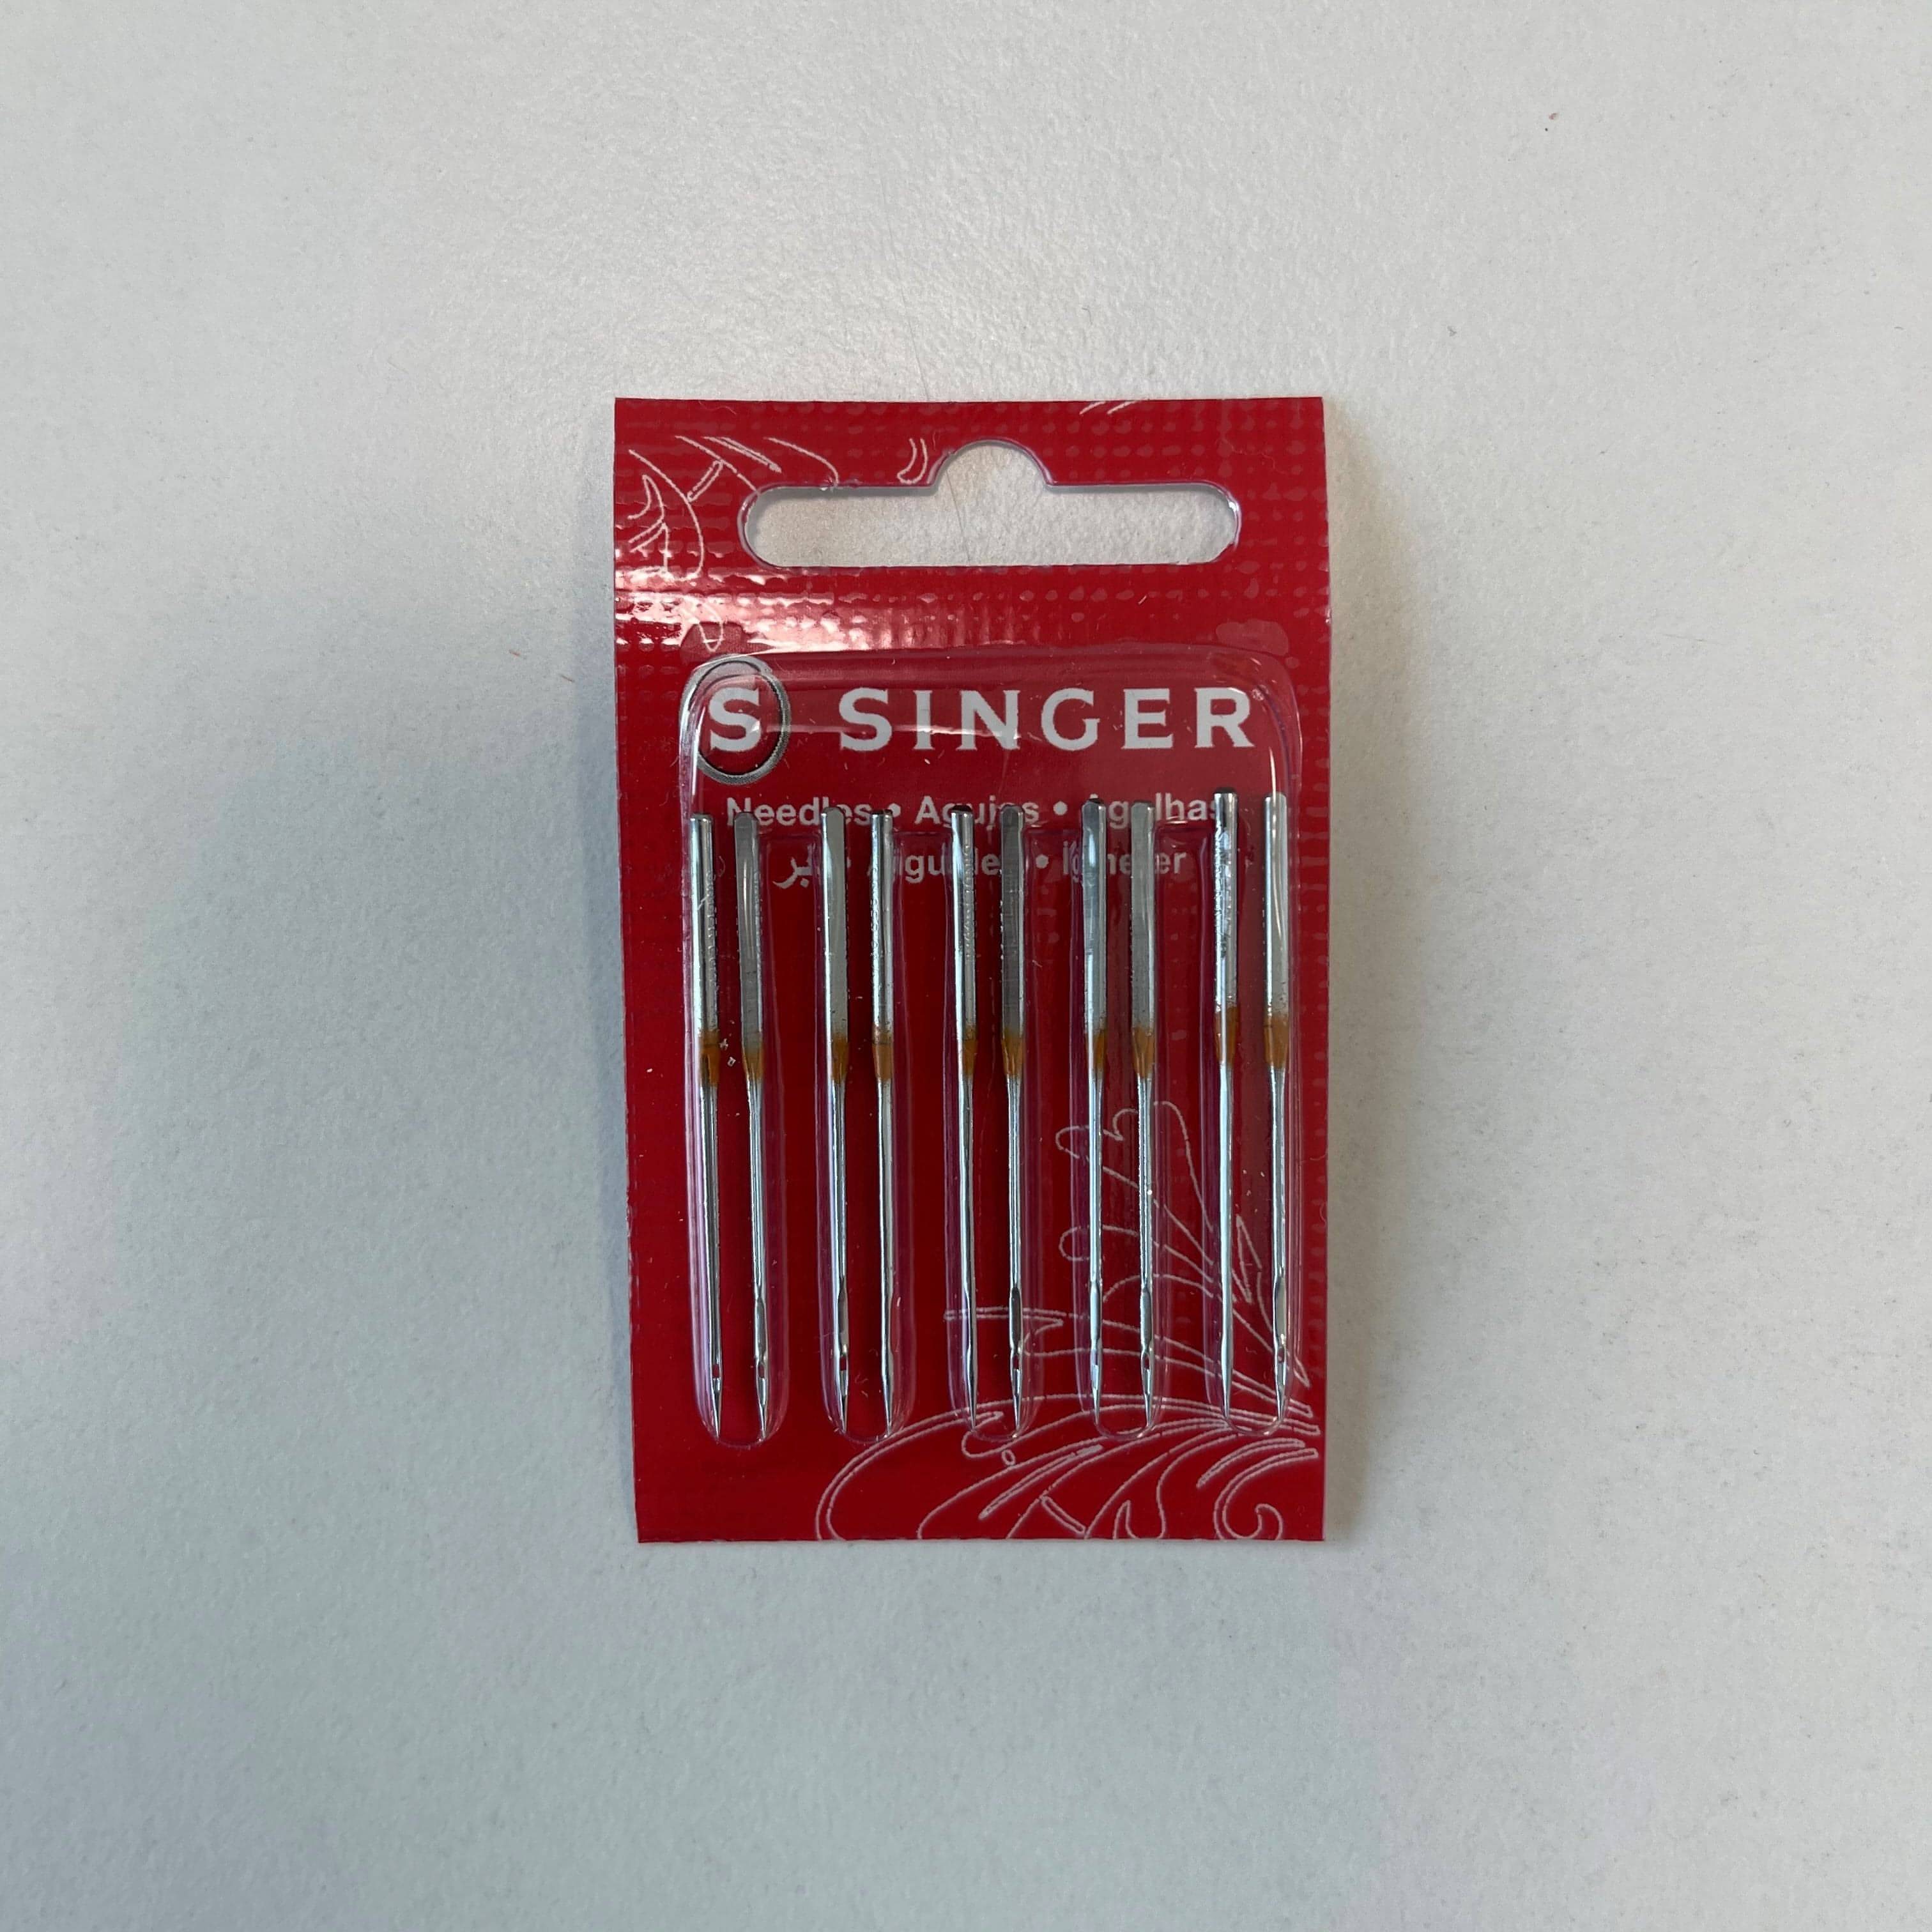 Singer Ball Point Overlocker Needles (2054) Size 80 - Pack of 10